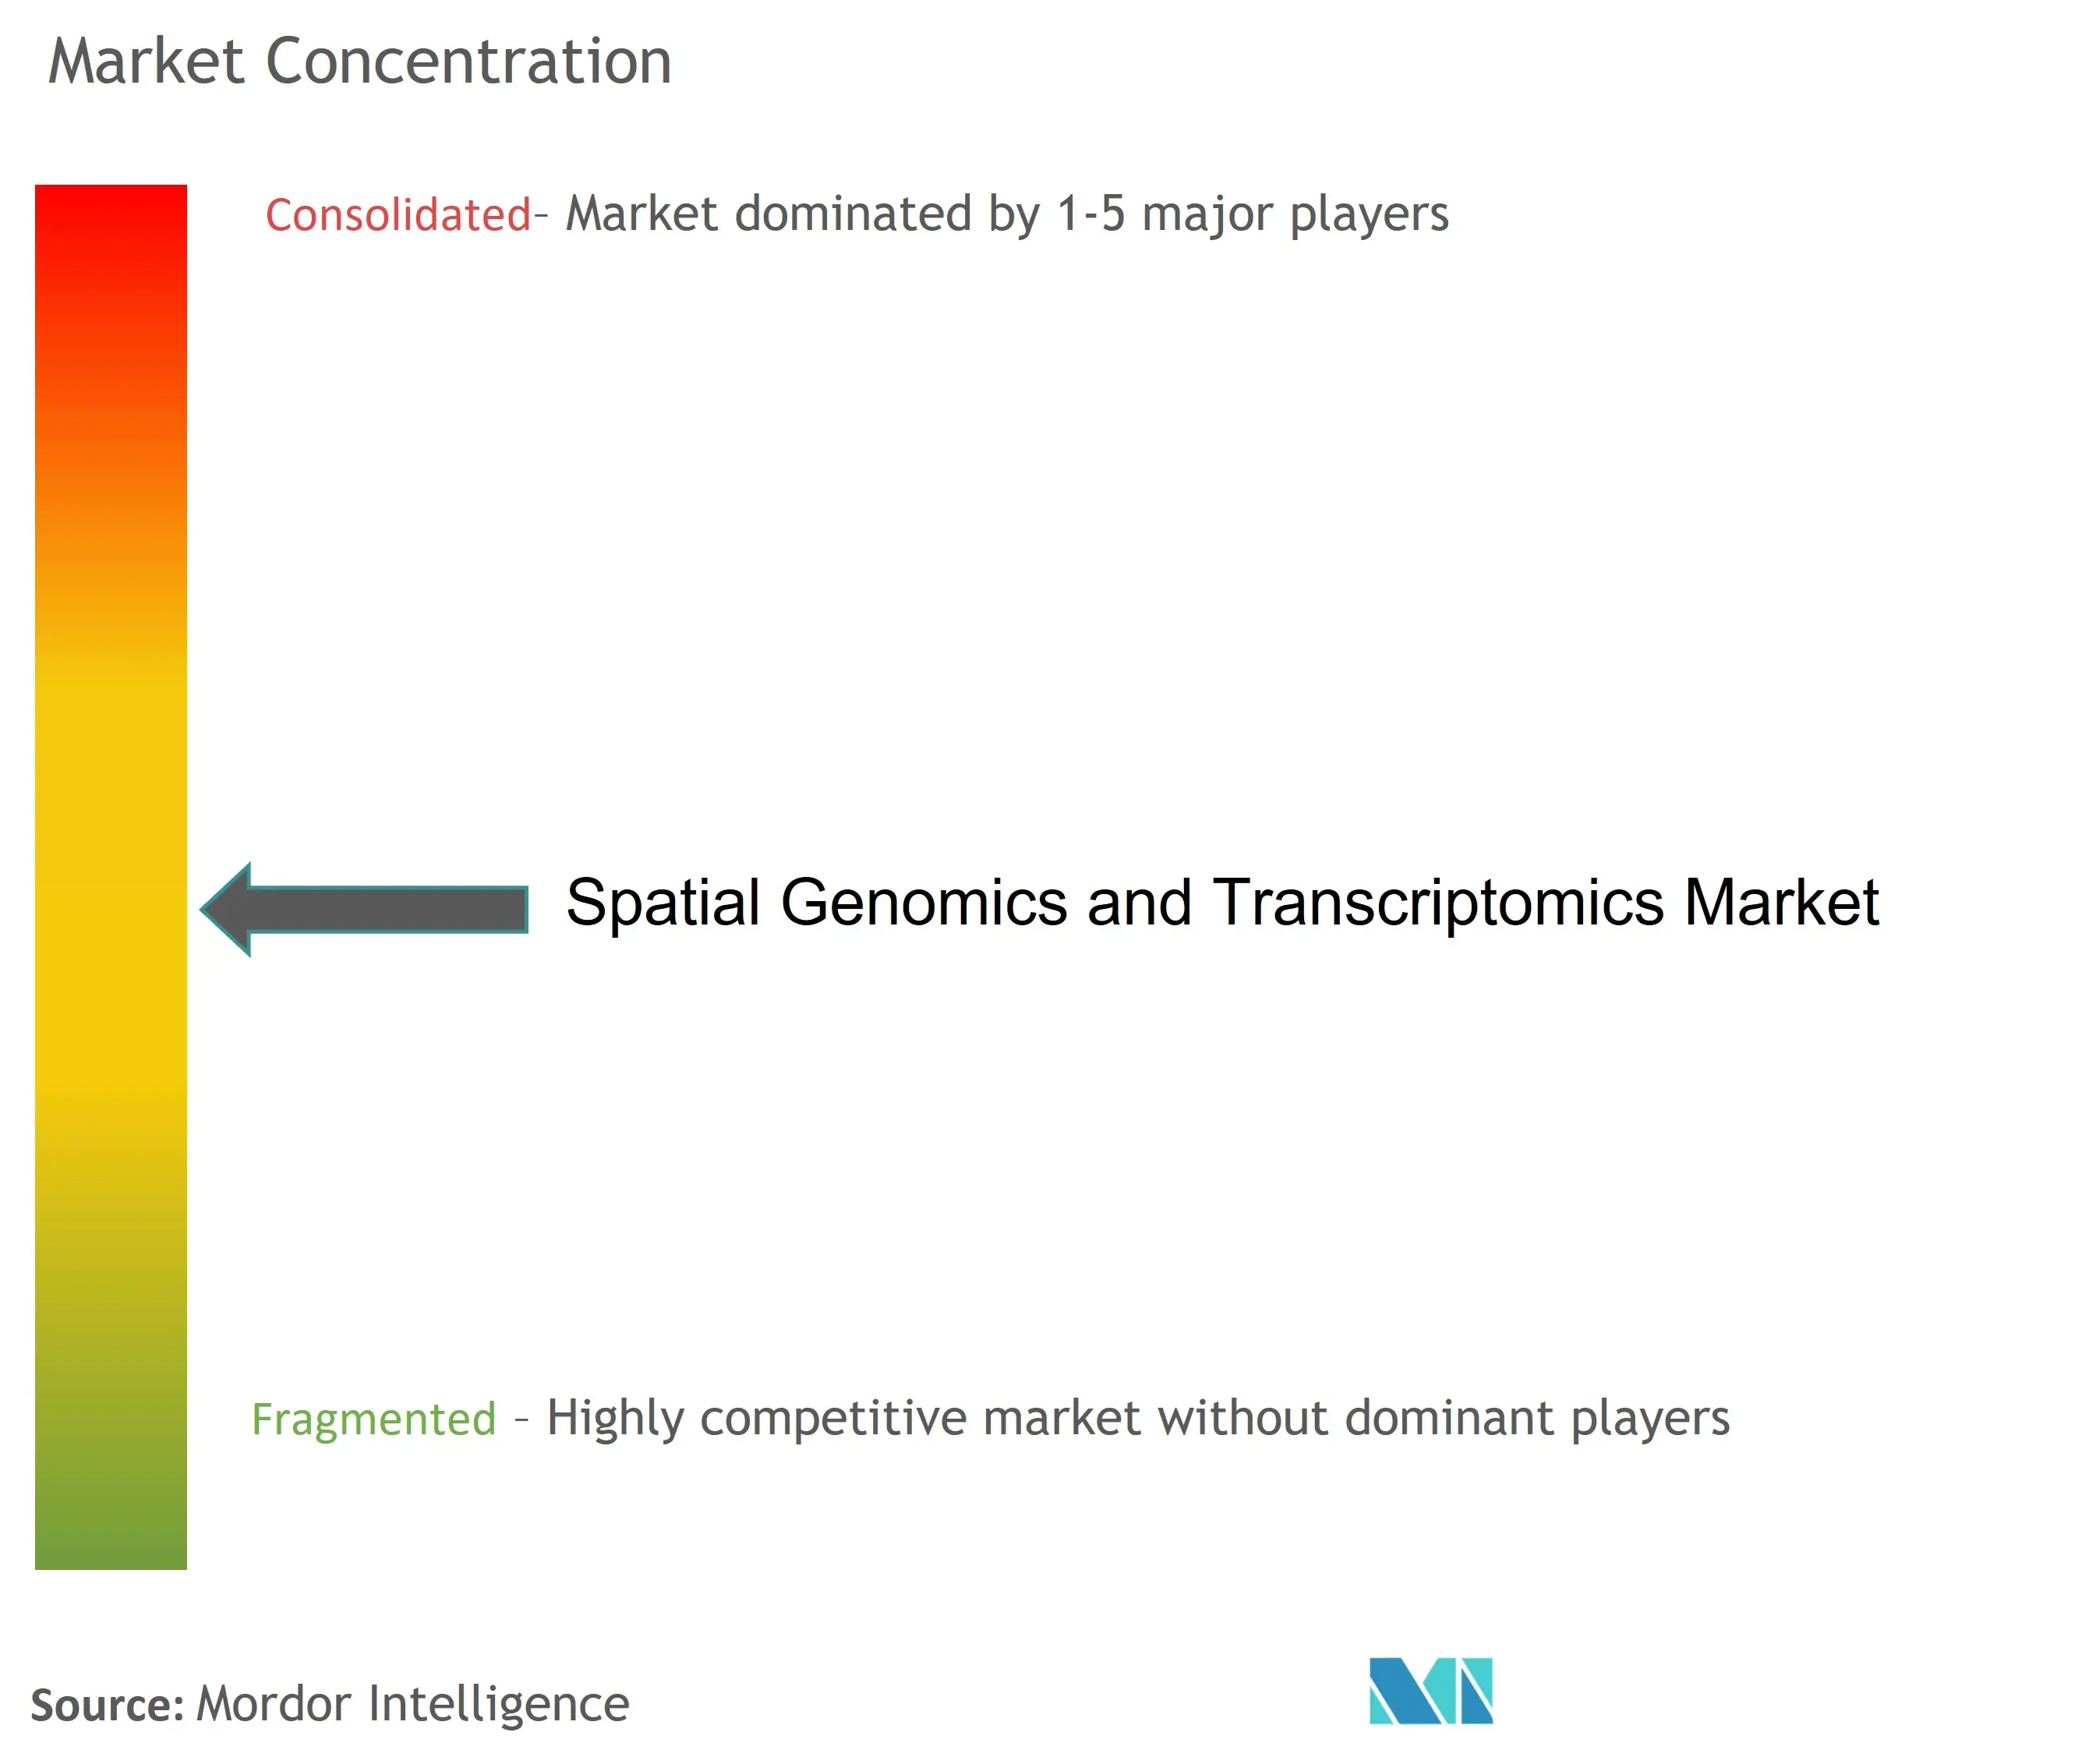 Marktkonzentration für räumliche Genomik und Transkriptomik